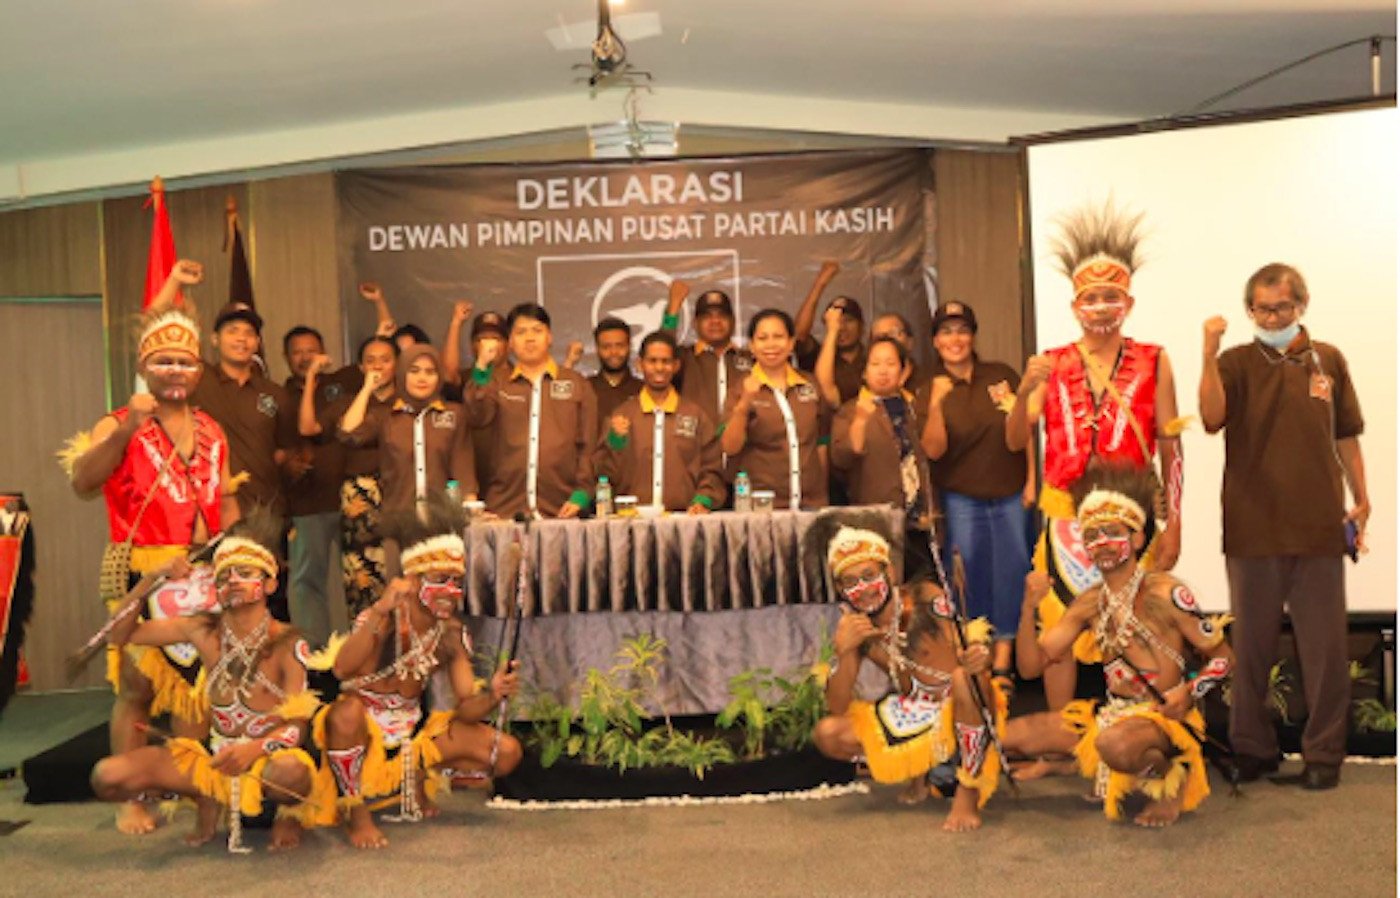 Anak Muda Indonesia Asal Papua Mendirikan Partai Kasih, Berikut Visi dan Misinya